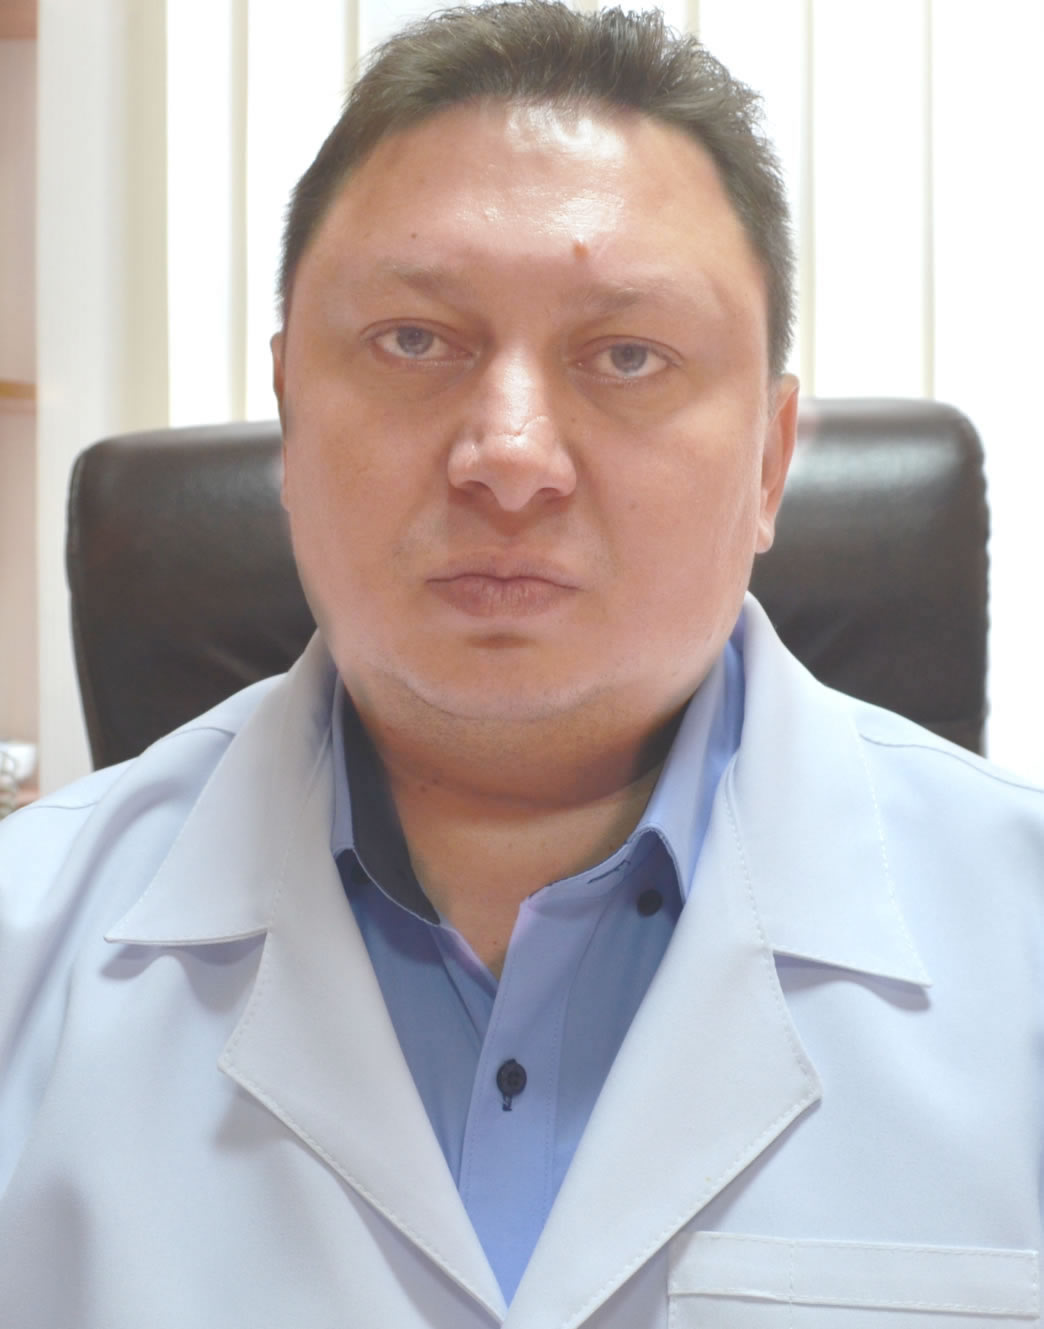 Петрик С. В. - врач высшей категории  ортопед-травматолог, Полтава